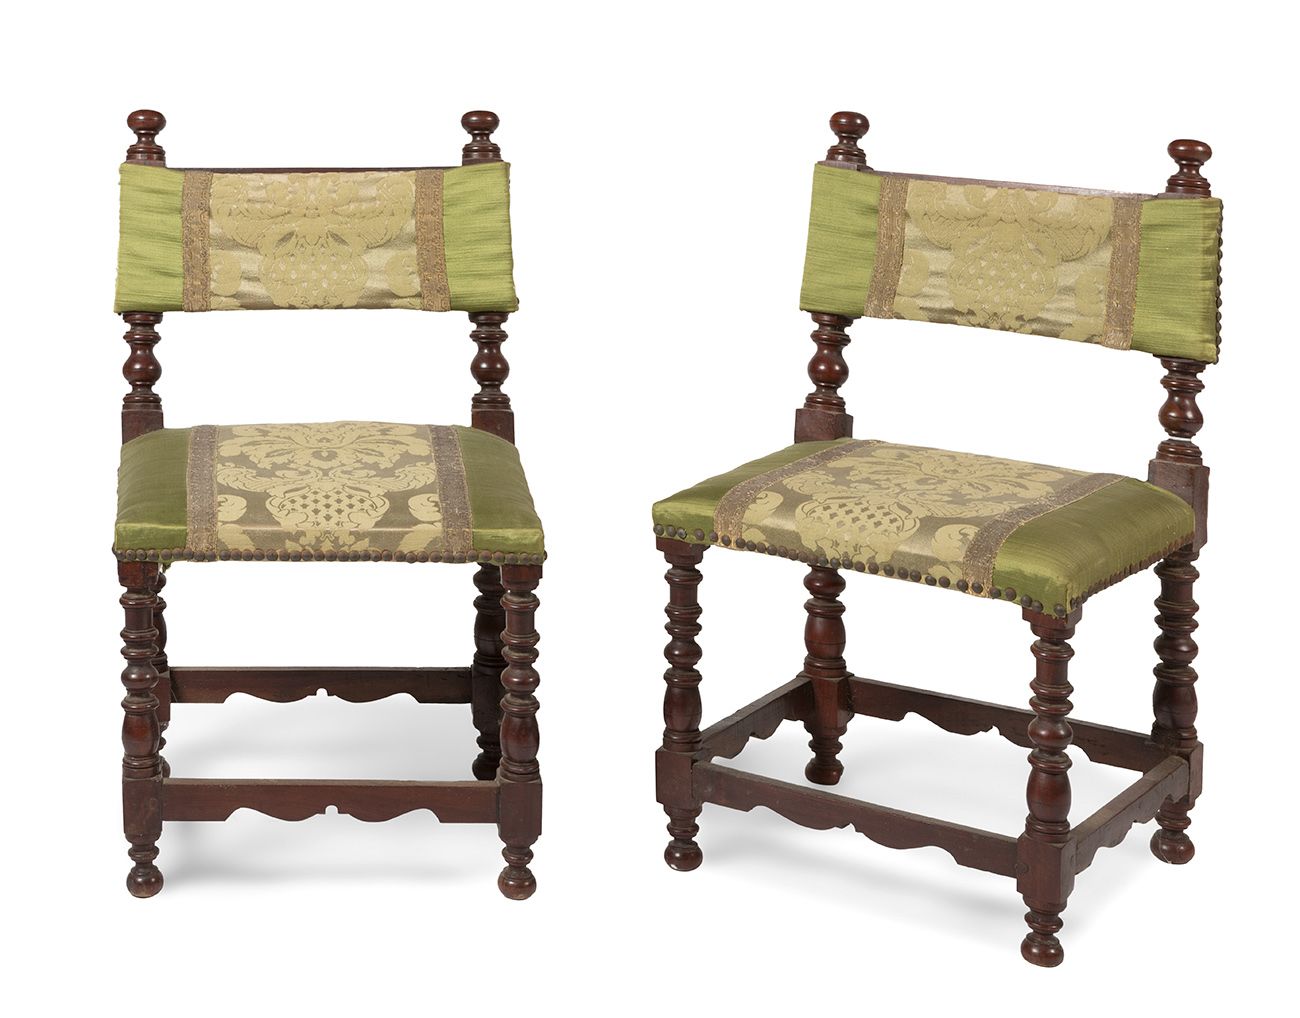 Null 一对卡斯蒂利亚文艺复兴风格的小椅子，18世纪末至19世纪初。
雕刻和翻转的胡桃木。织物软垫。
它显示了磨损和撕裂的痕迹。
测量结果。68 x 39 x&hellip;